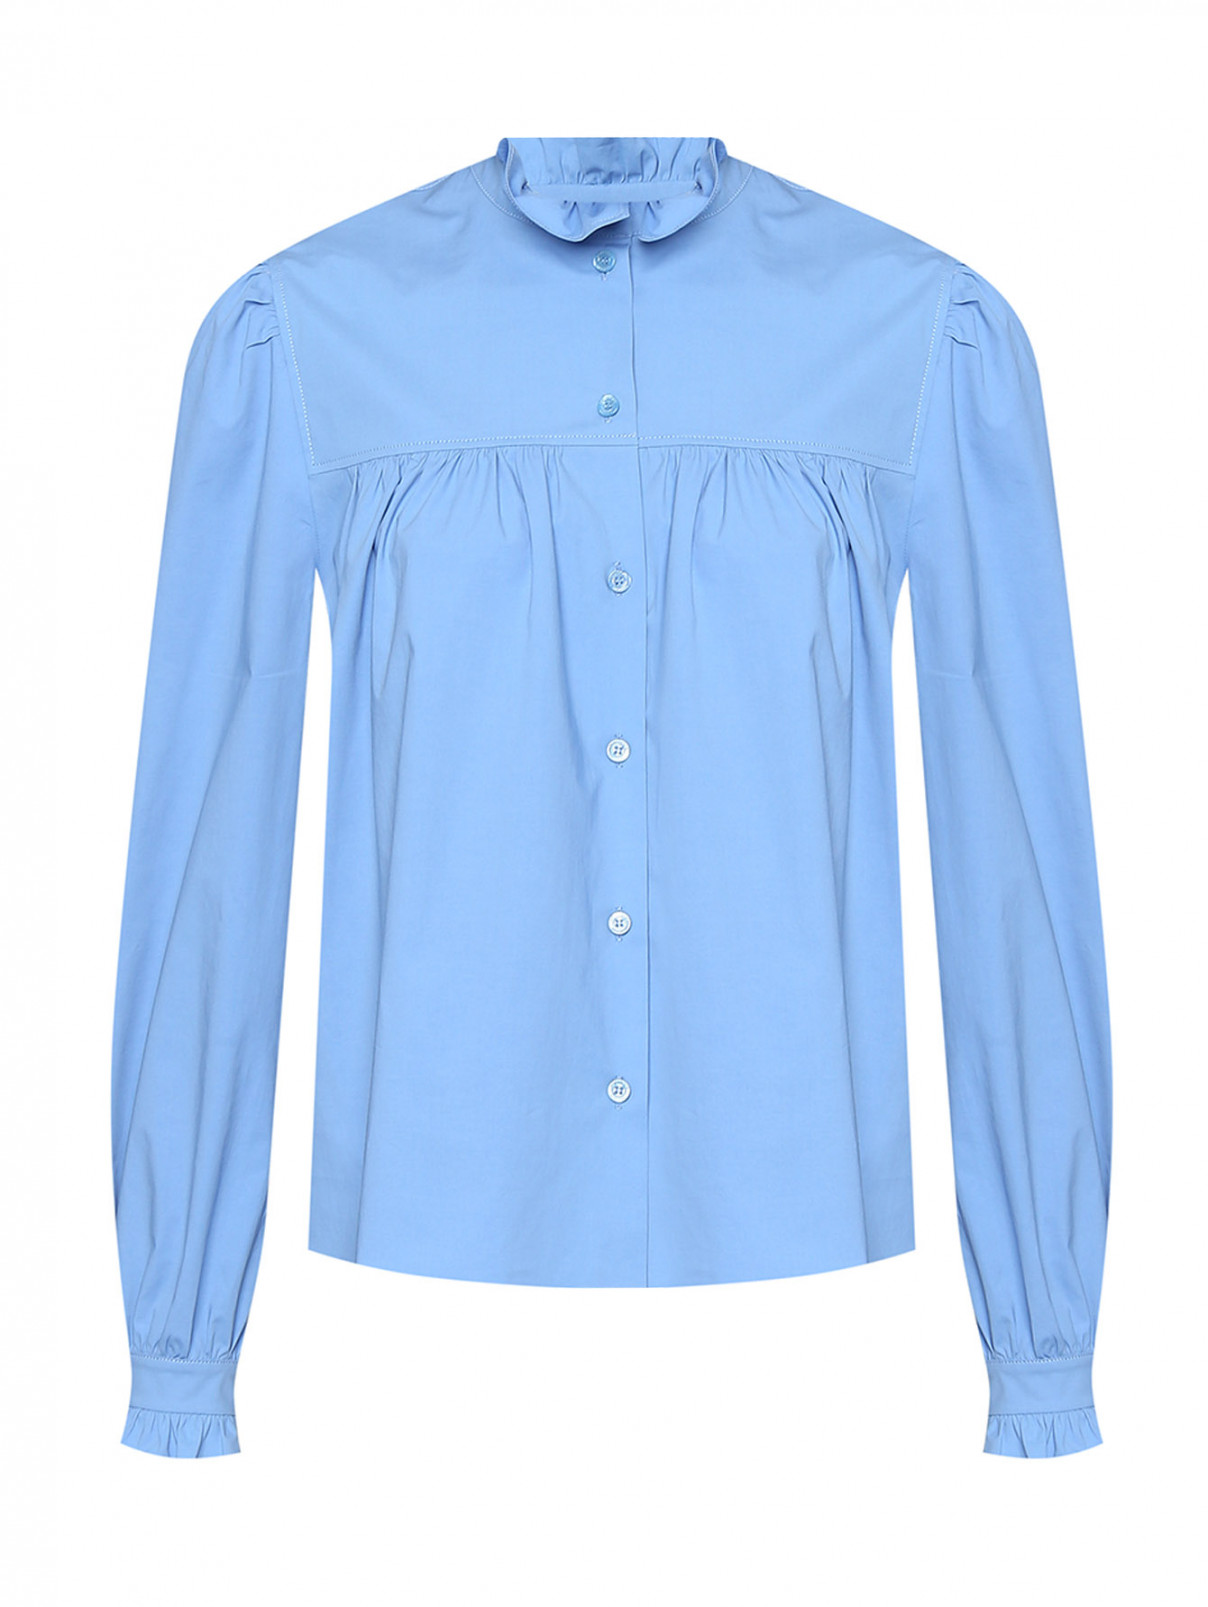 Однотонная блуза с рюшами Moschino Boutique  –  Общий вид  – Цвет:  Синий